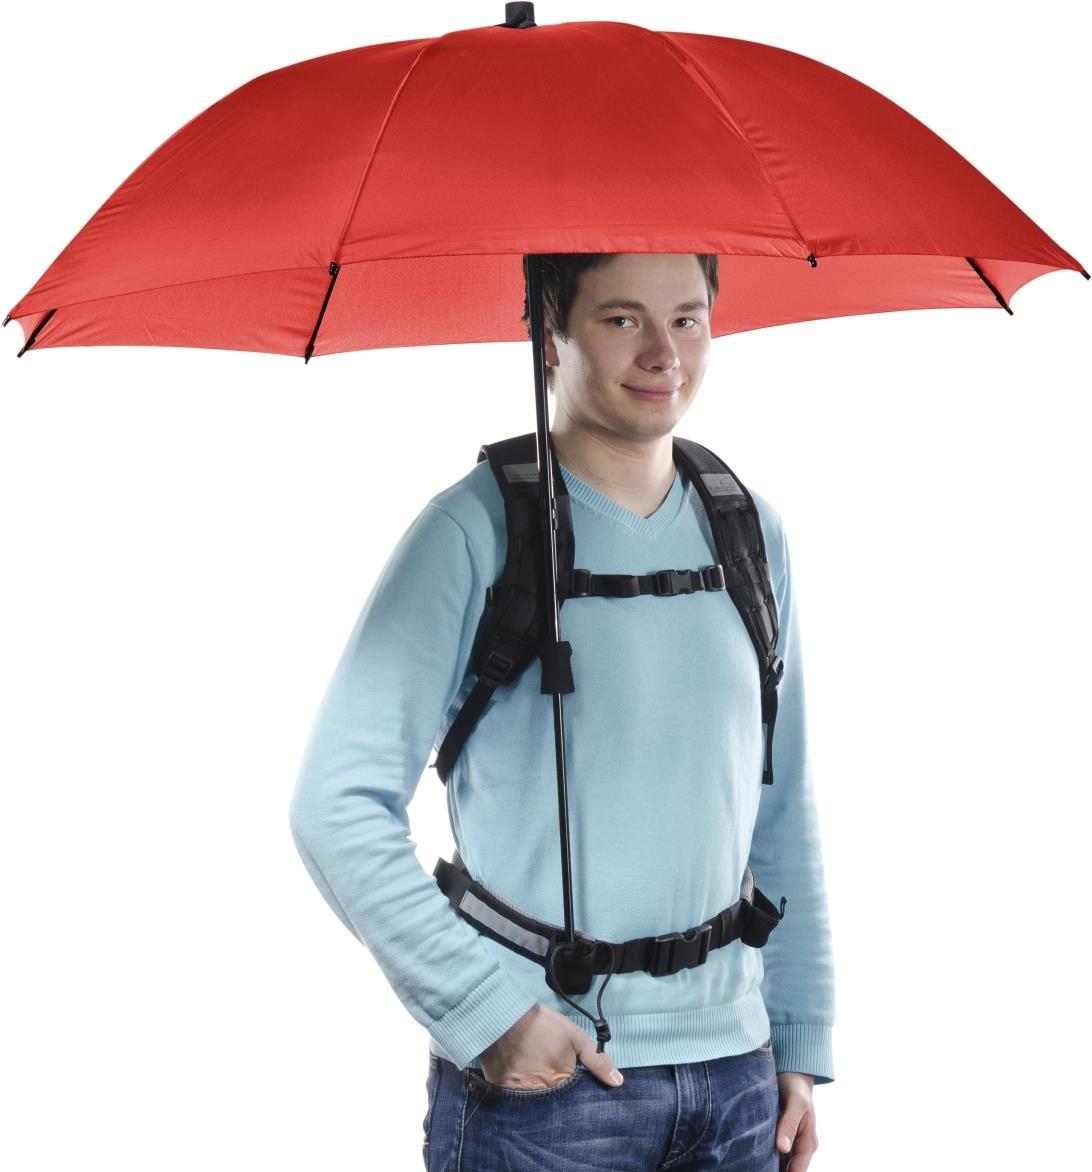 Swing handsfree Regenschirm rot mit Tragegestelll (17916)